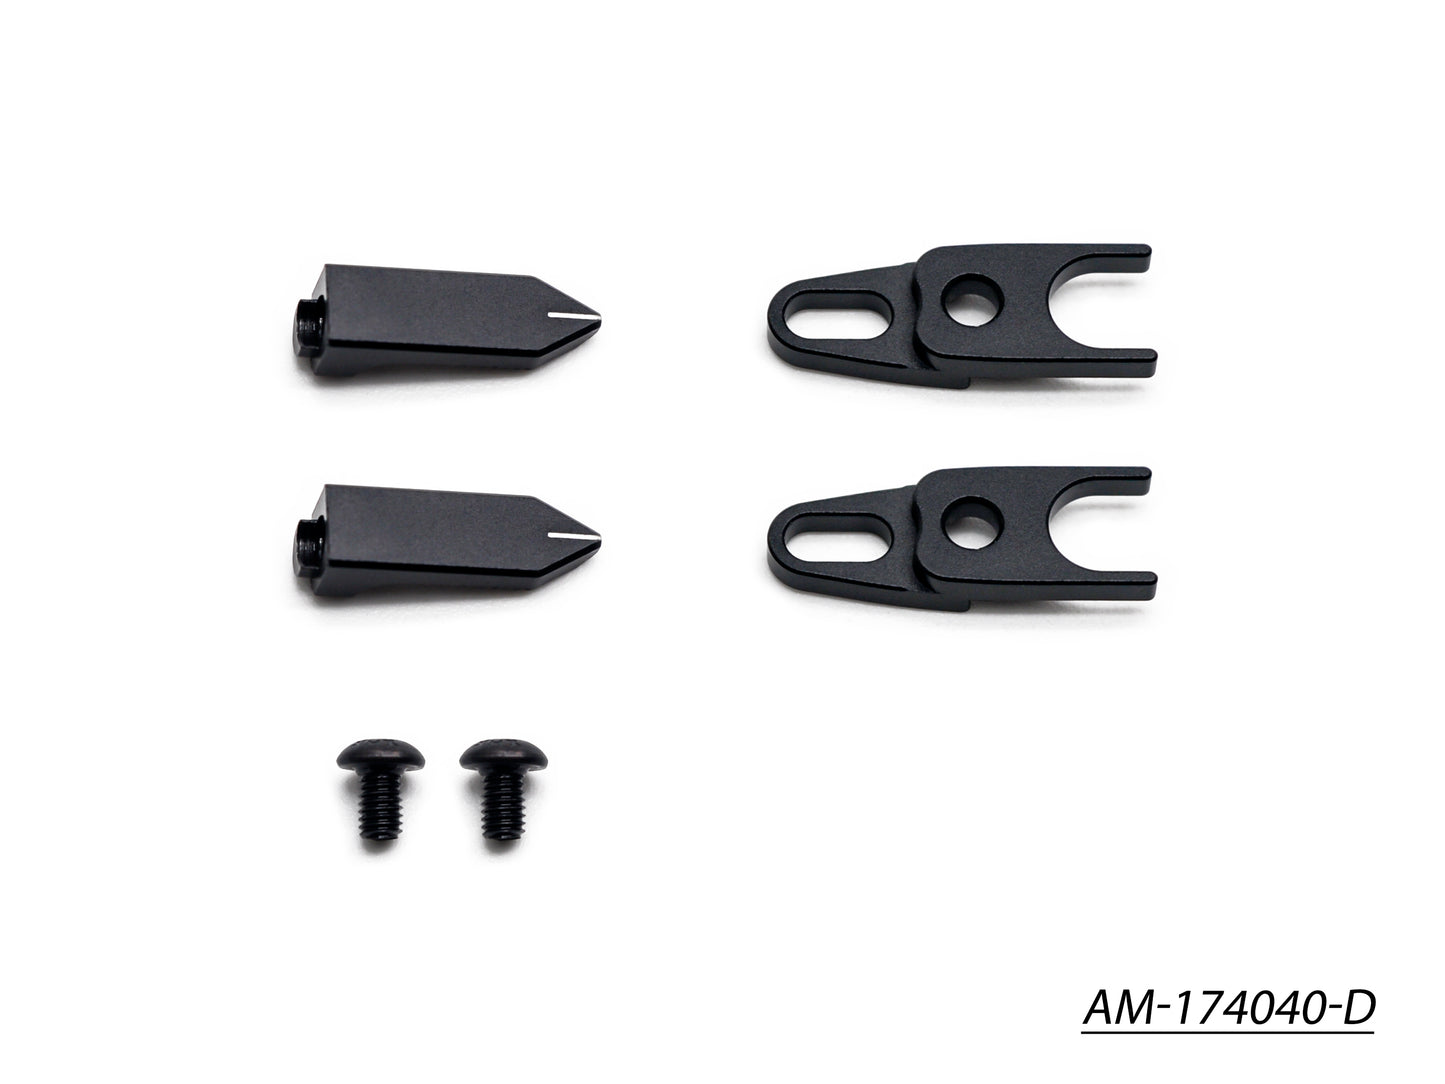 Arrowmax Caster pointer adapter (4D Setup system) AM-174040-C & AM-174040-D